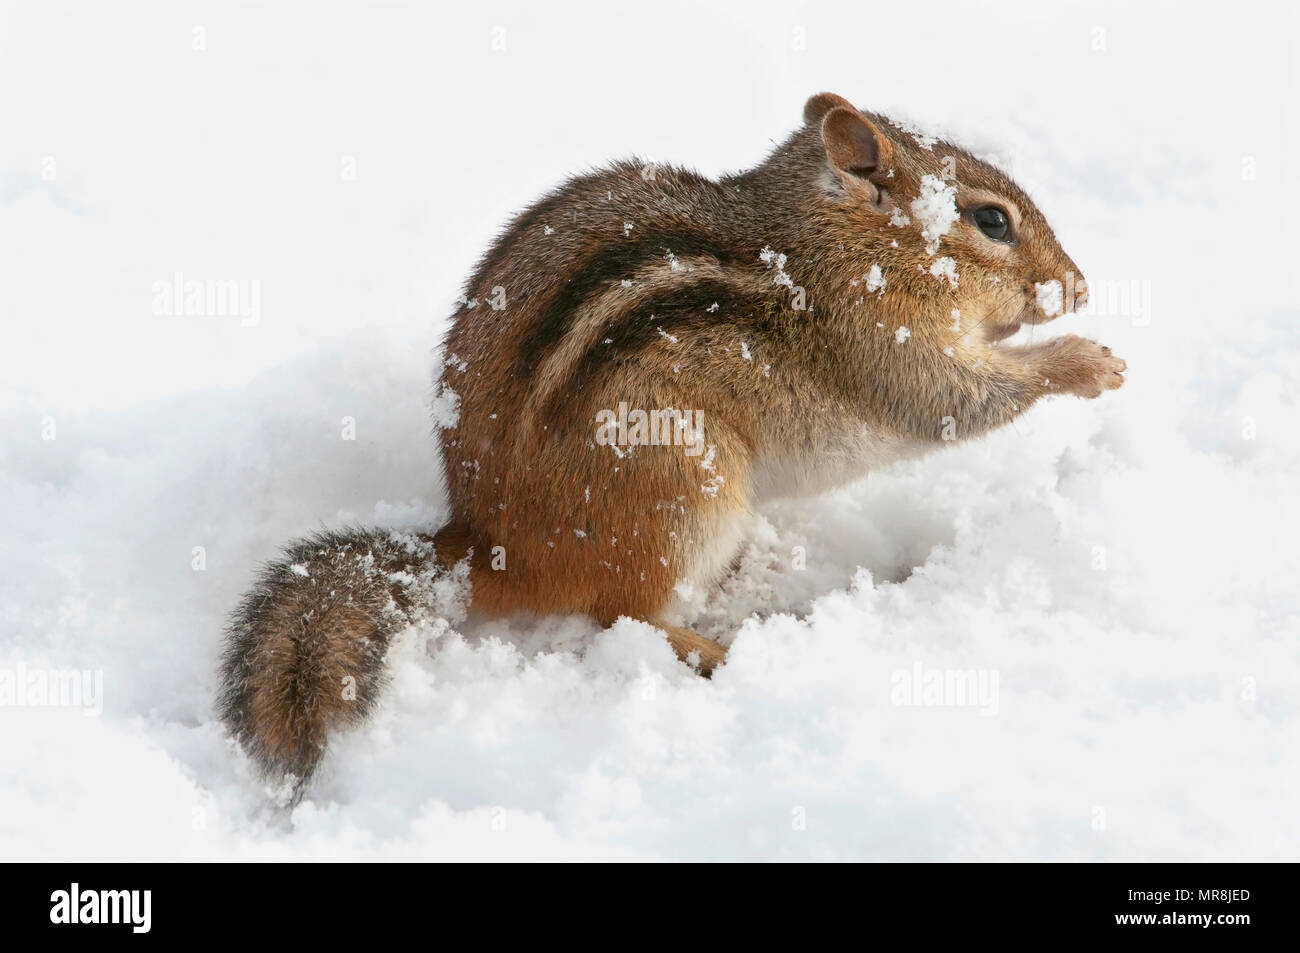 Östlichen Streifenhörnchen (Tamias striatus), E USA, durch Überspringen Moody/Dembinsky Foto Assoc Stockfoto